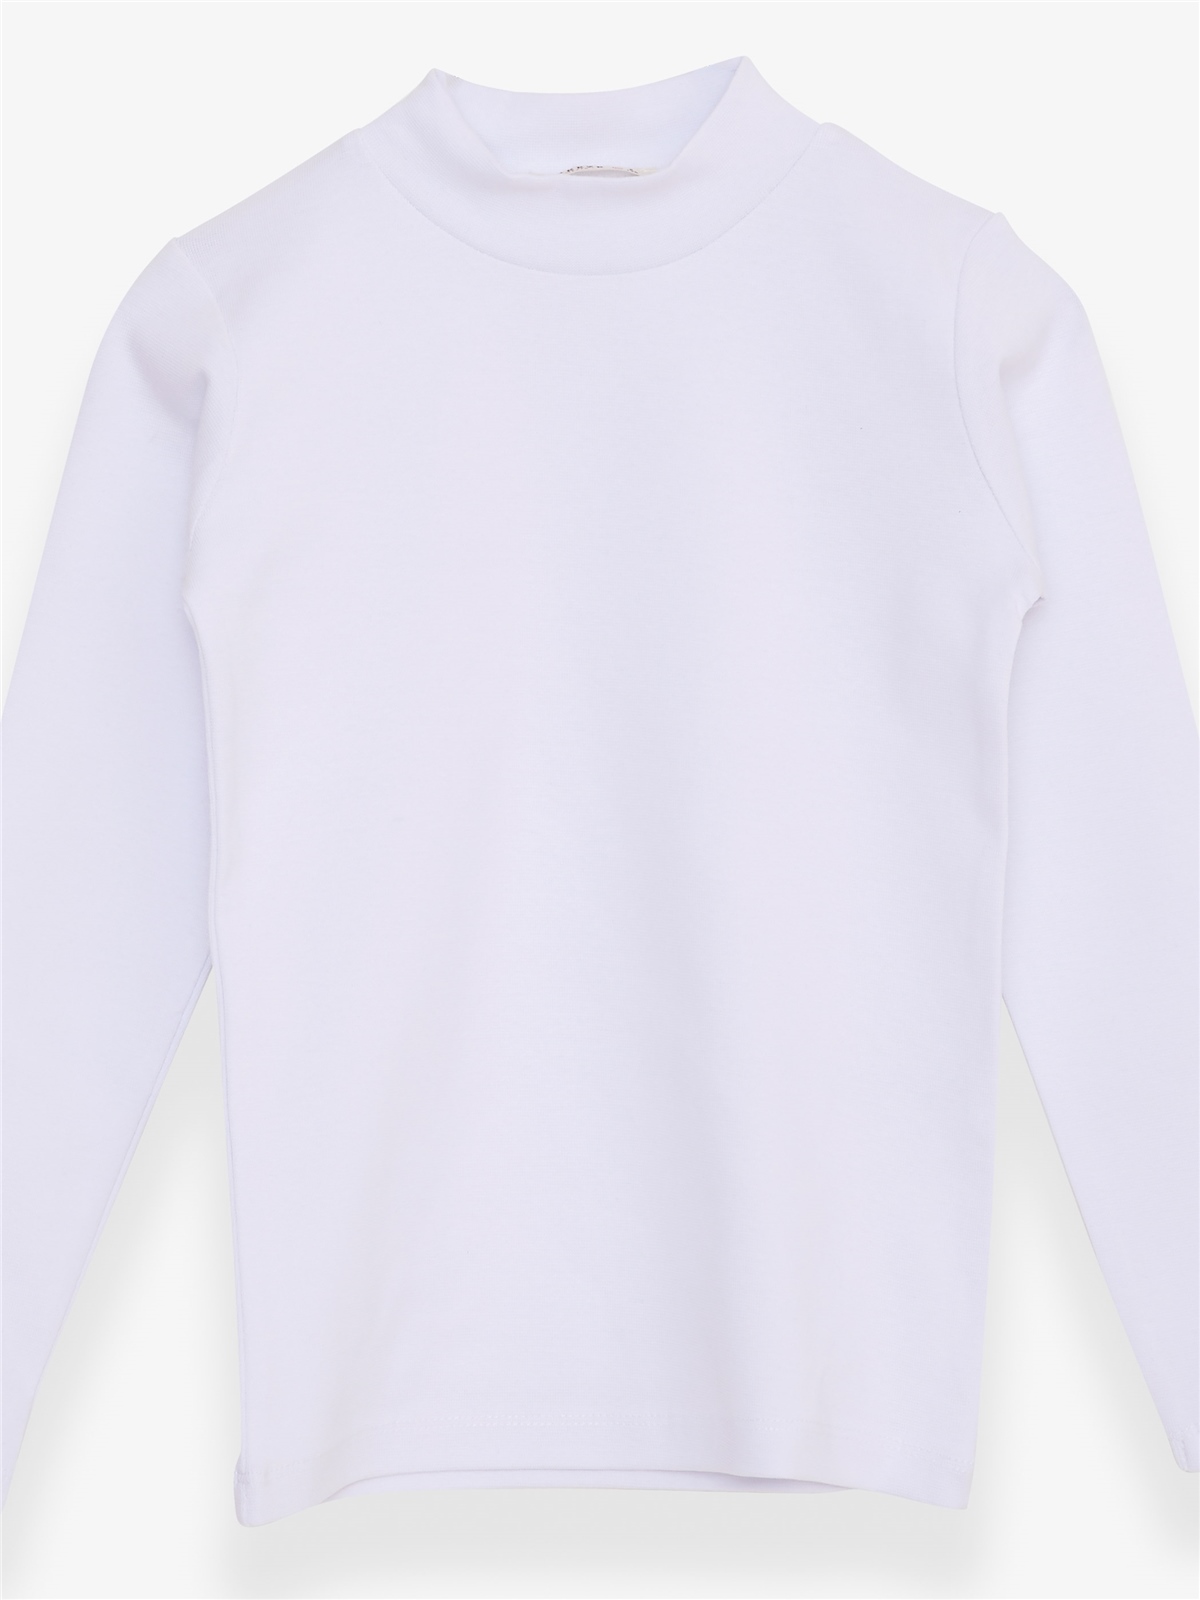 Kız Çocuk Uzun Kollu Tişört Basic Beyaz 5 Yaş - Pamuklu Modeller | Breeze